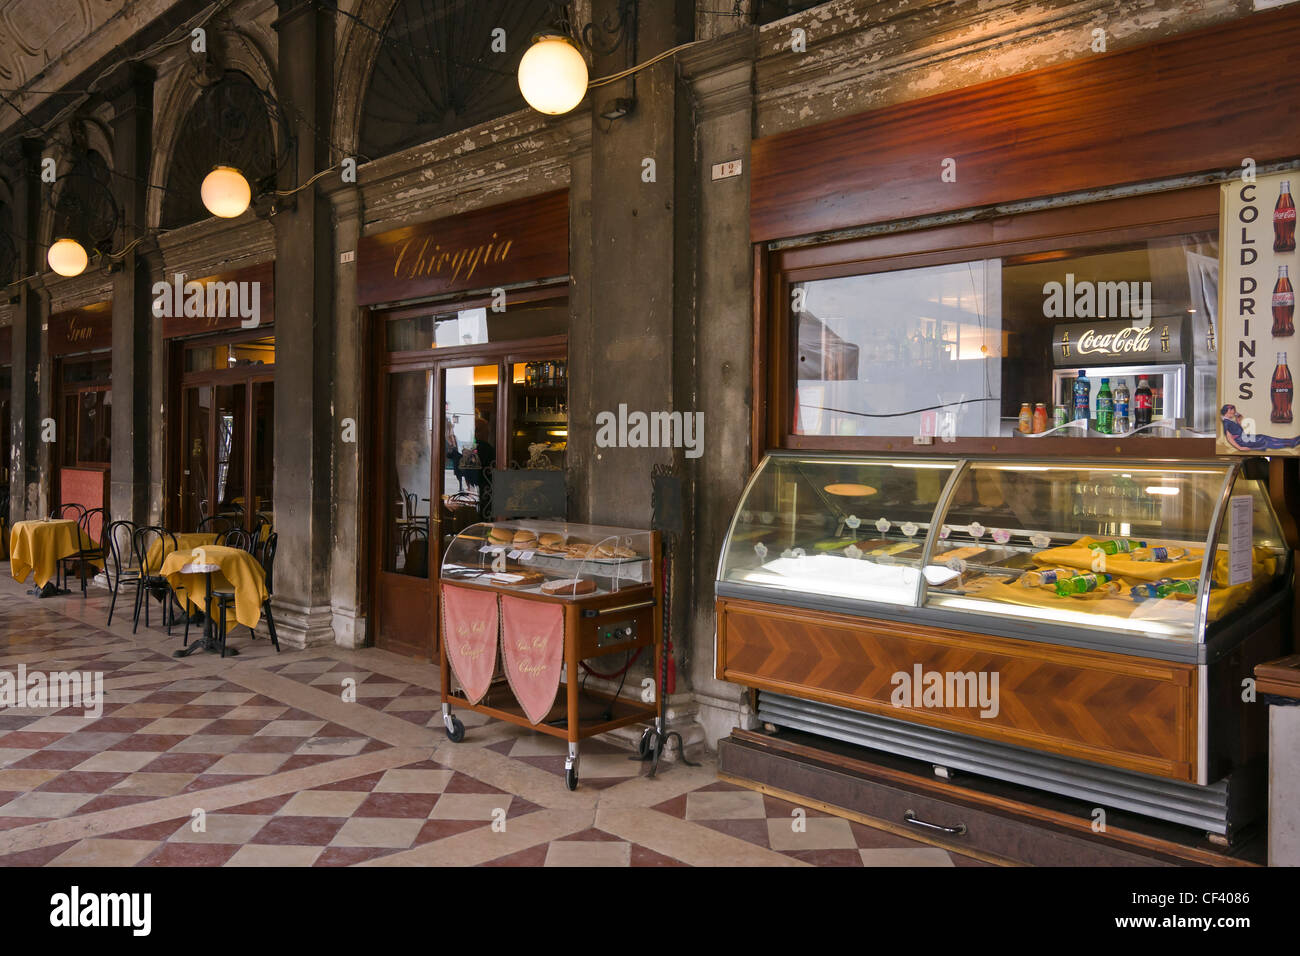 Windows of Gran Caffe Chioggia - Venice, Venezia, Italy, Europe Stock Photo